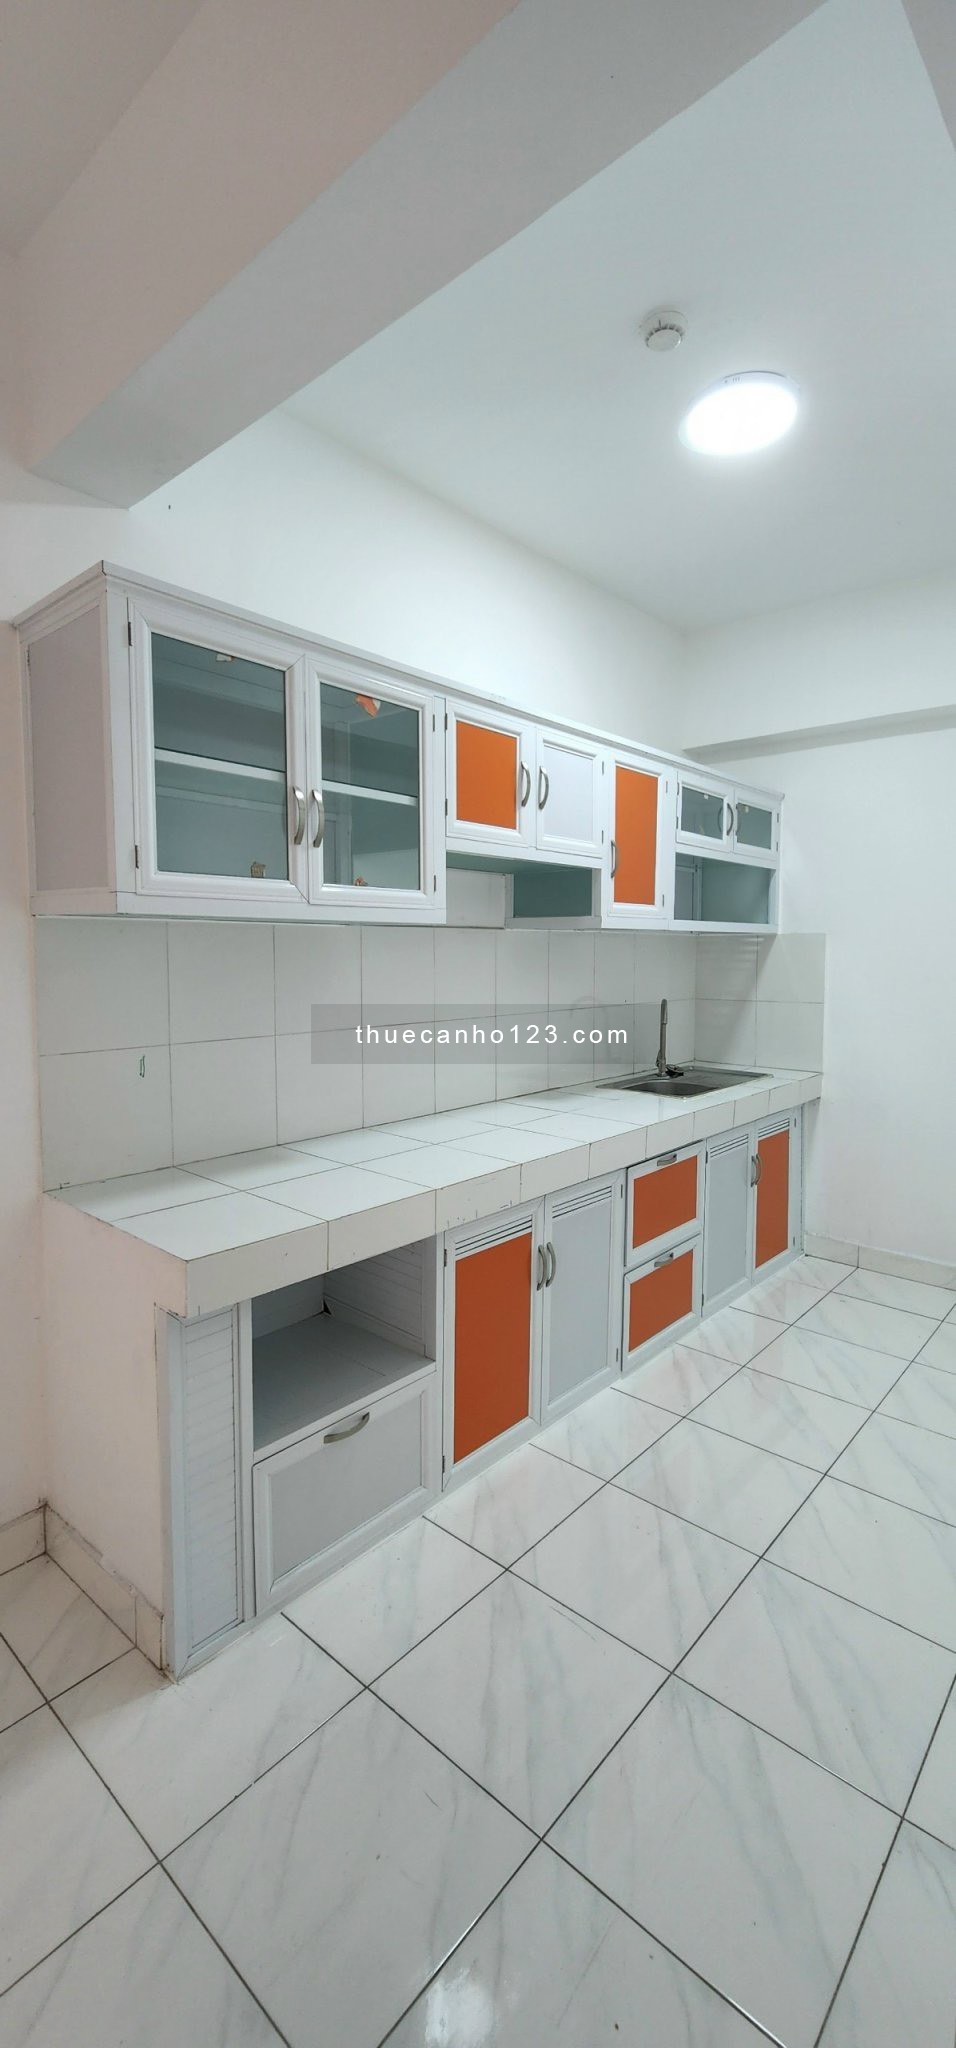 Cho thuê căn hộ 2 phòng ngủ khu Topaz tại Celadon City, nội thất cơ bản giá 8.5 triệu/tháng